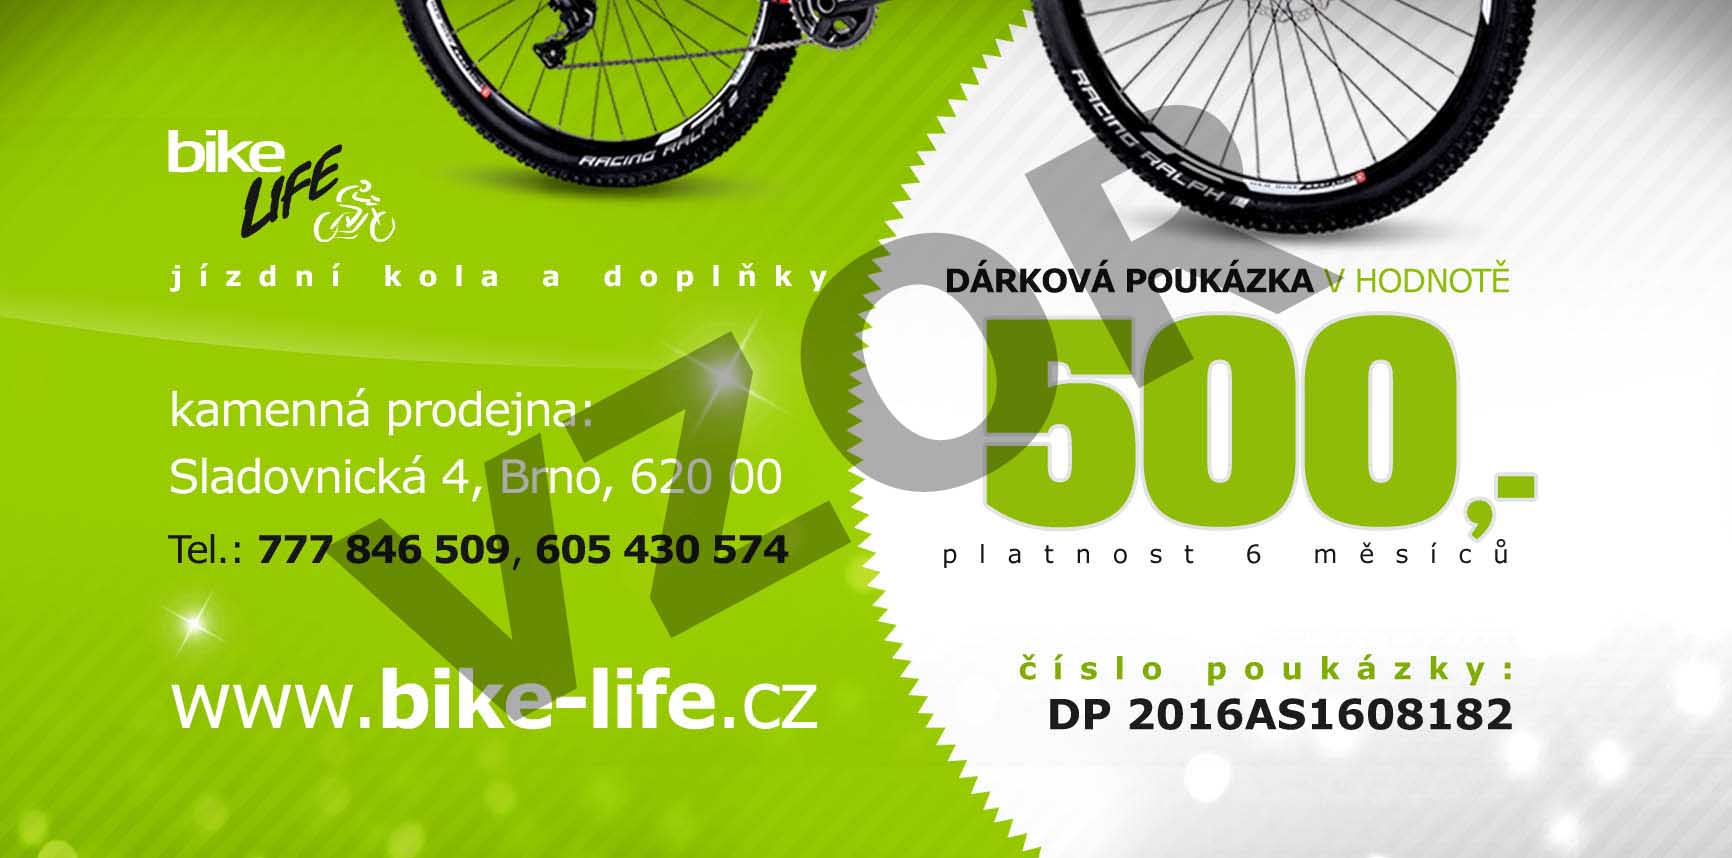 Dárkový poukaz BIKE-LIFE.cz